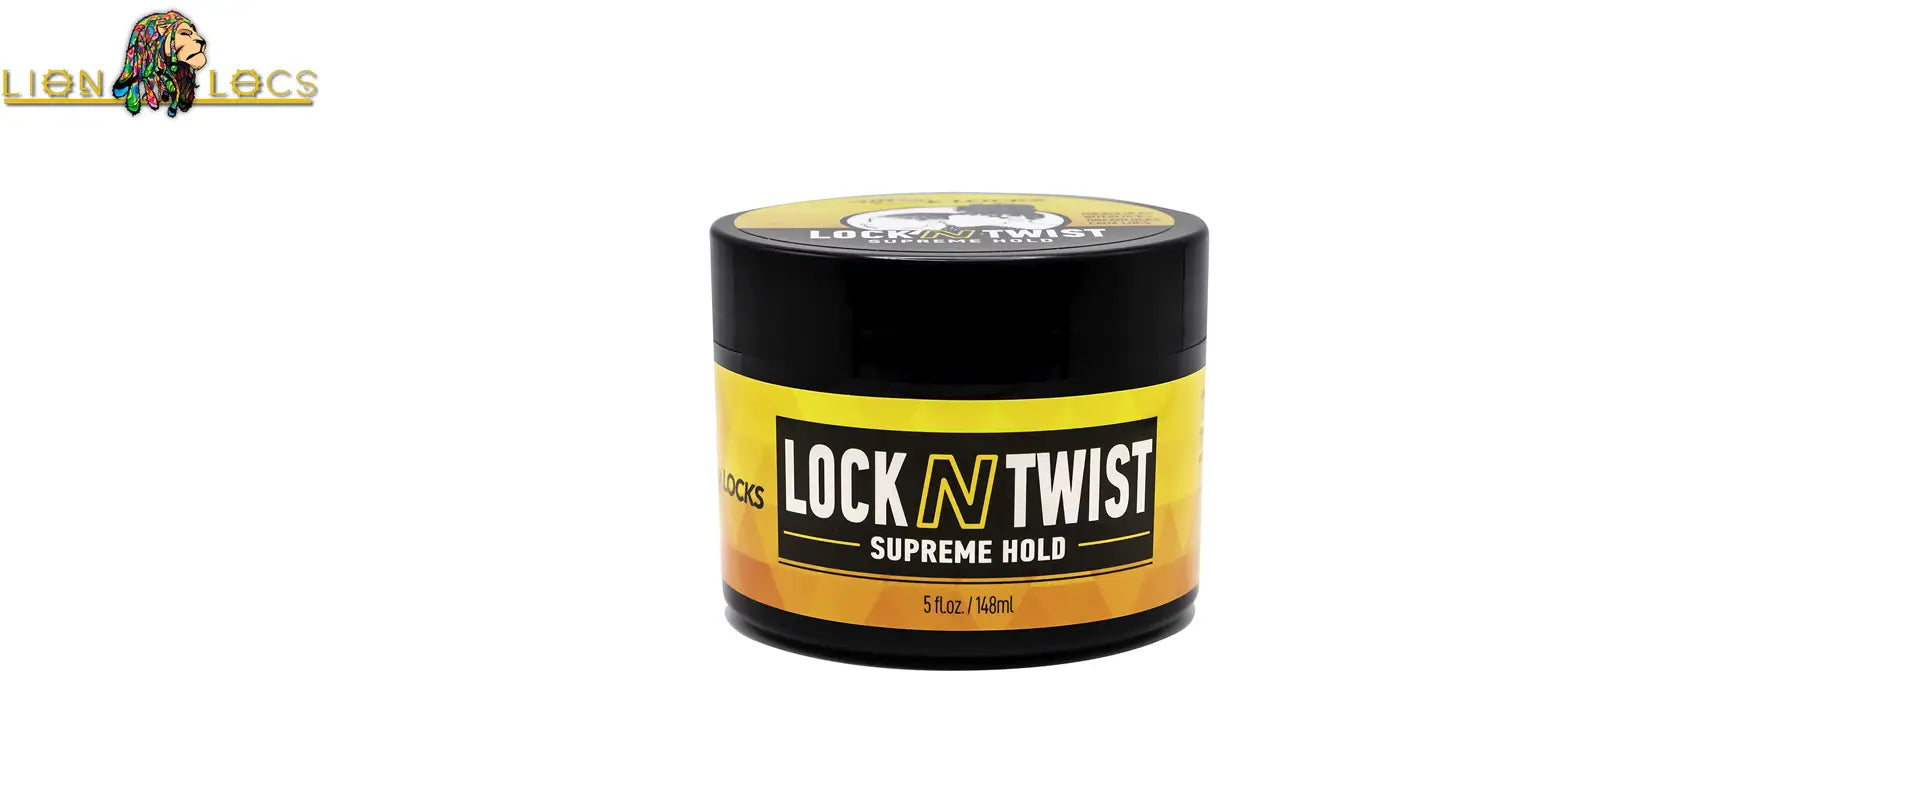 AllDay Locks Lock N Twist | Locking Gel, Re-Twist Locks